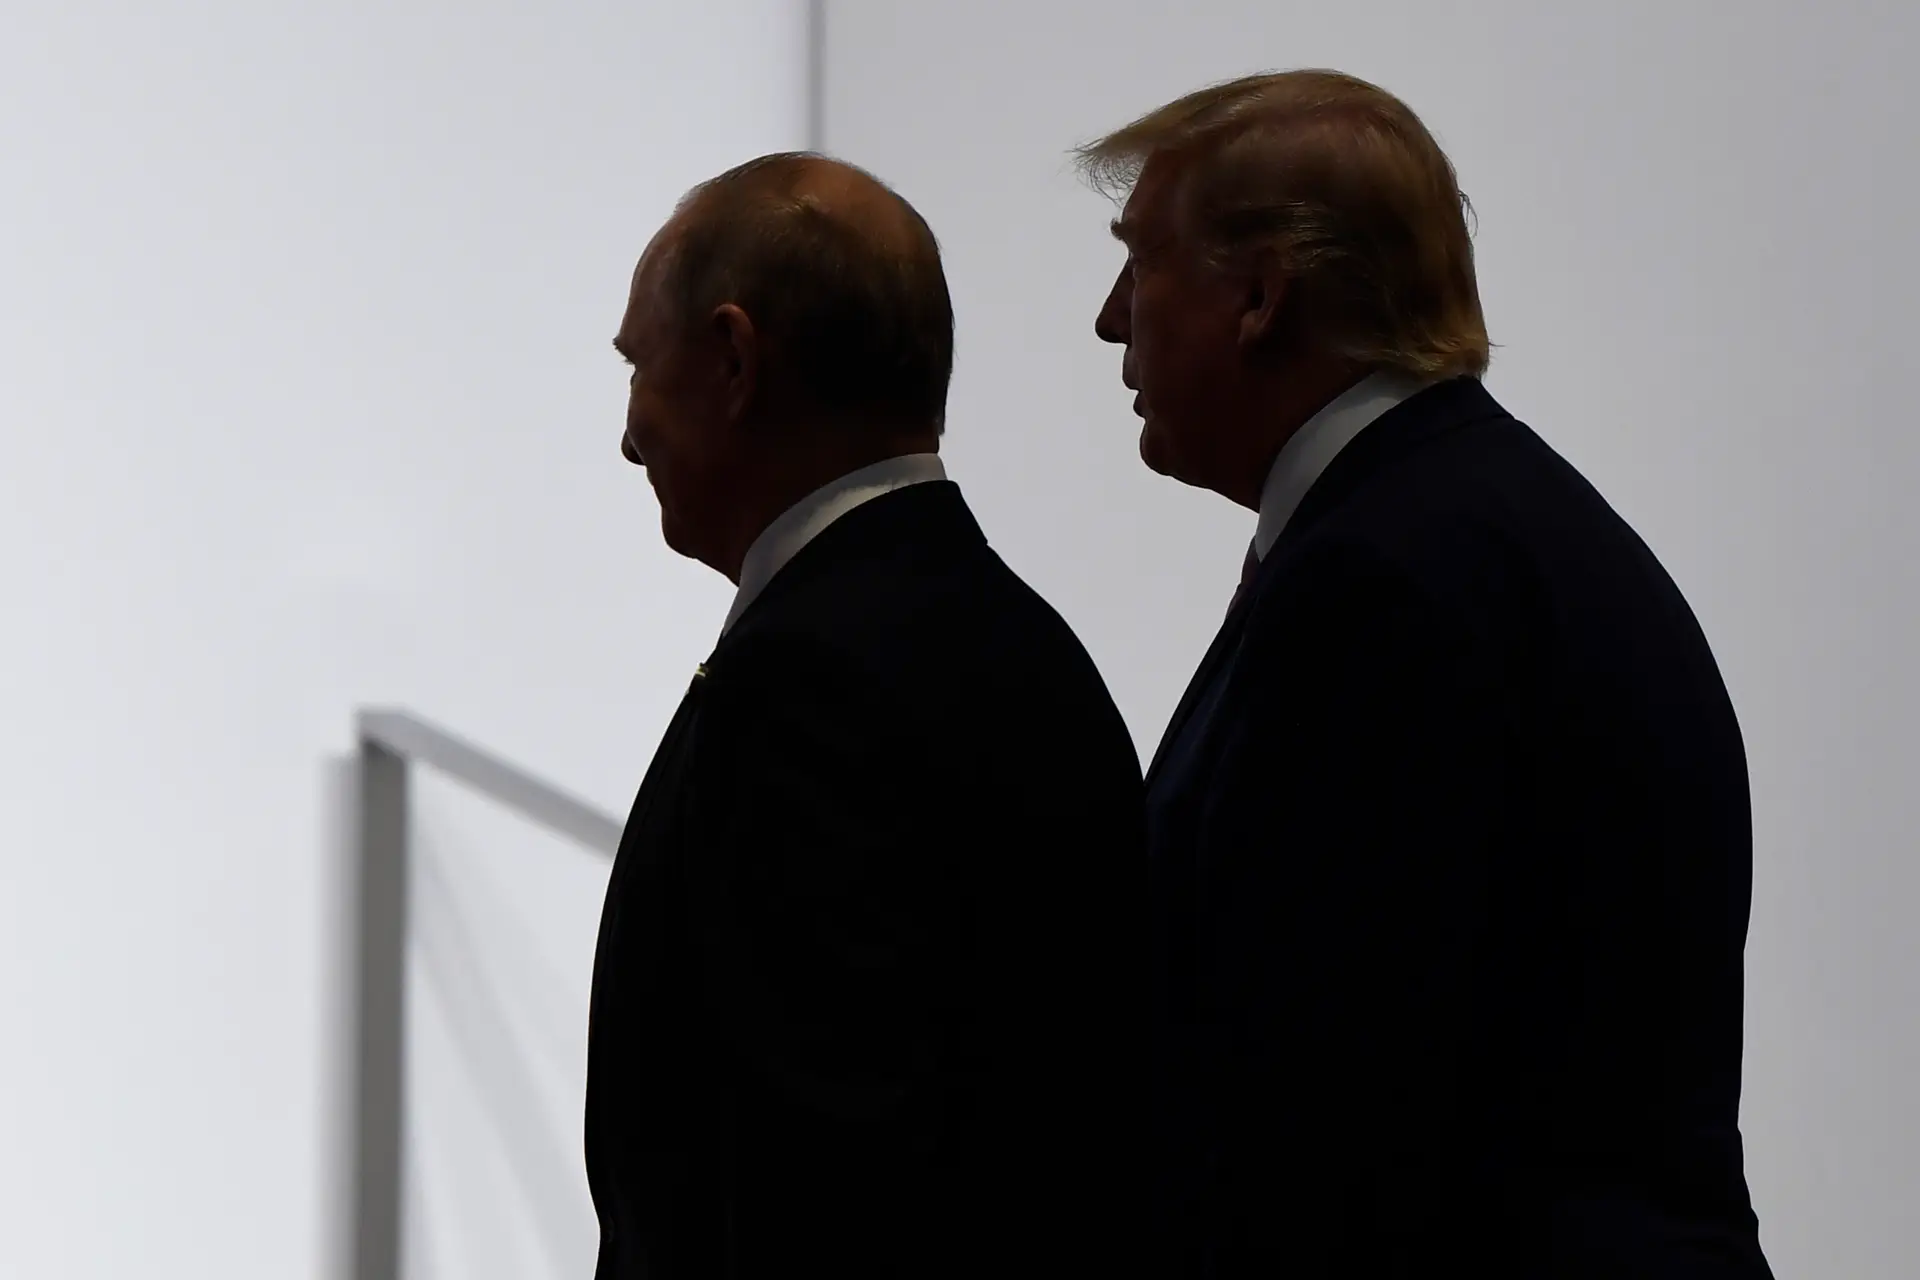 Eleições intercalares nos EUA: as relações com Moscovo continuarão más com qualquer resultado